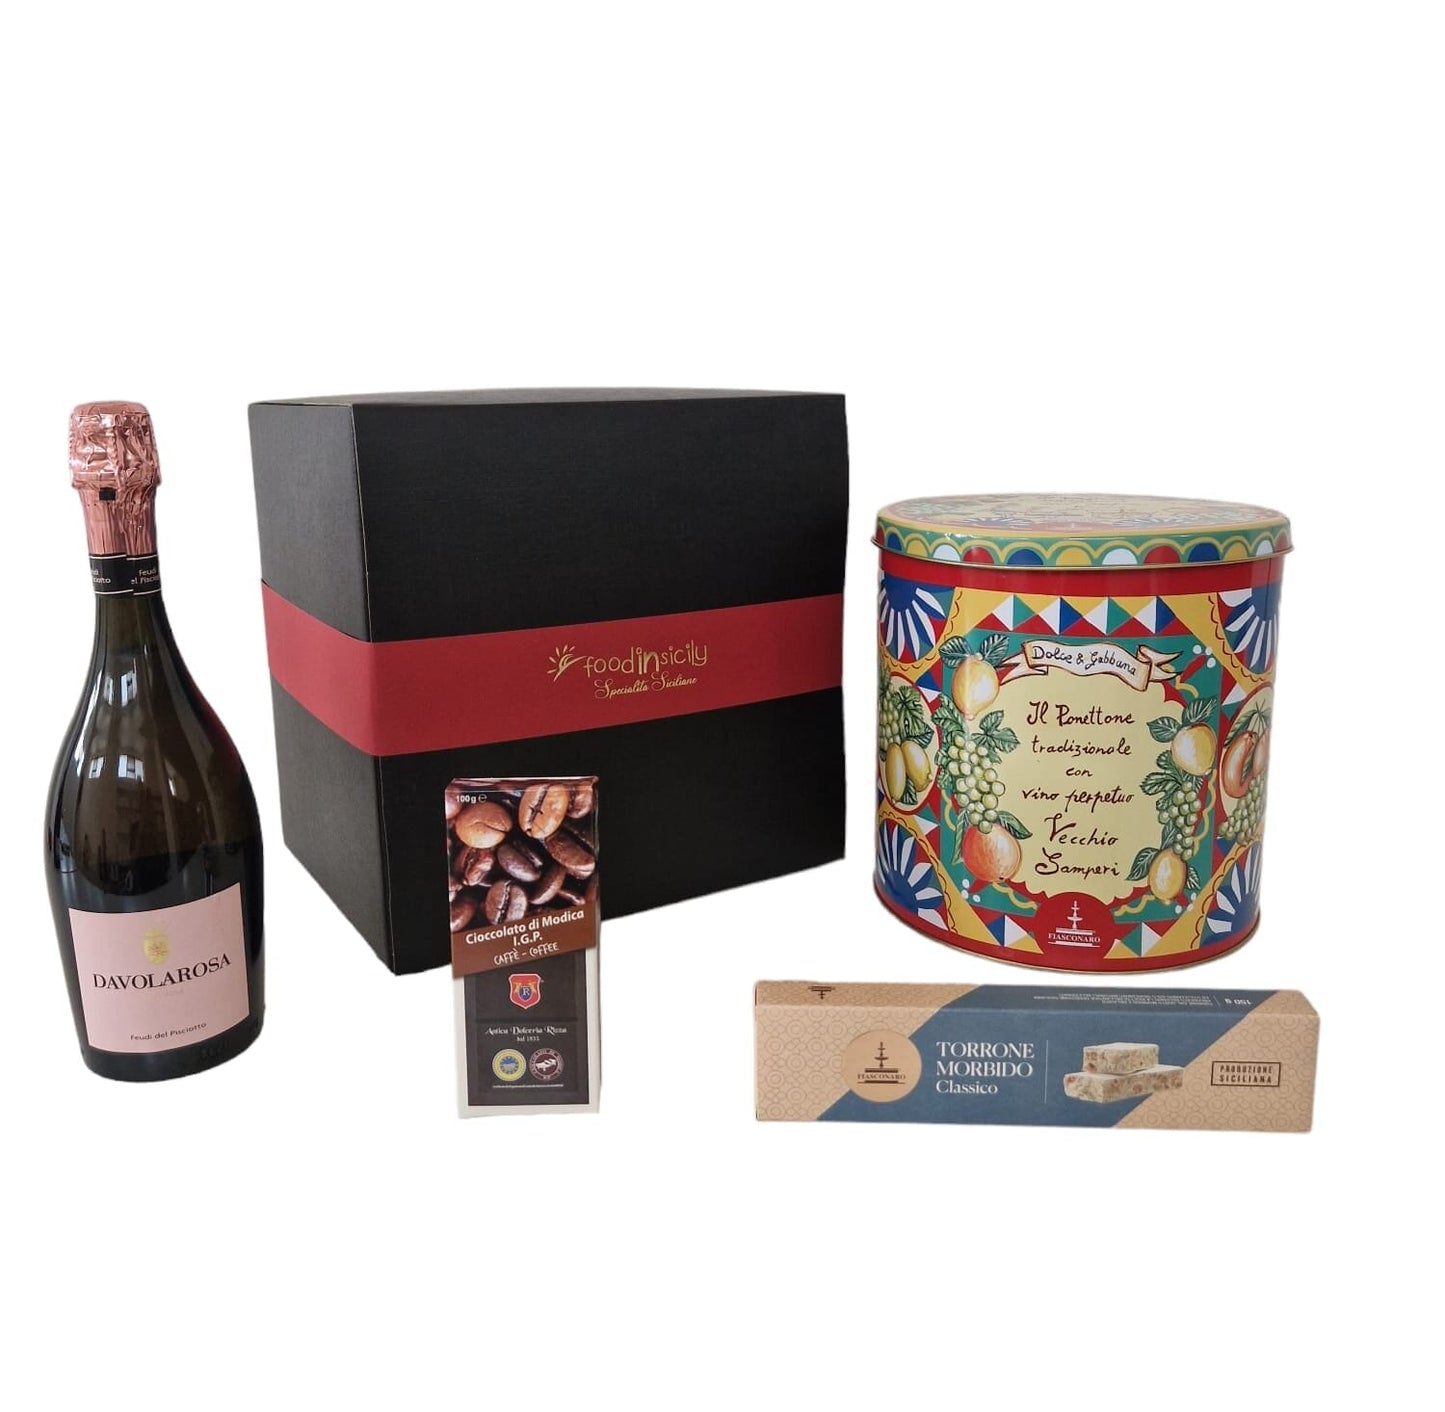 Confezione regalo "Dolce&Gabbana", con 4 prodotti di alta qualità e in 5 varianti Confezione regalo natalizia Fiasconaro Panettone Fiasconaro D&G Vino Perpetuo Vecchio Samperi 1 Kg 